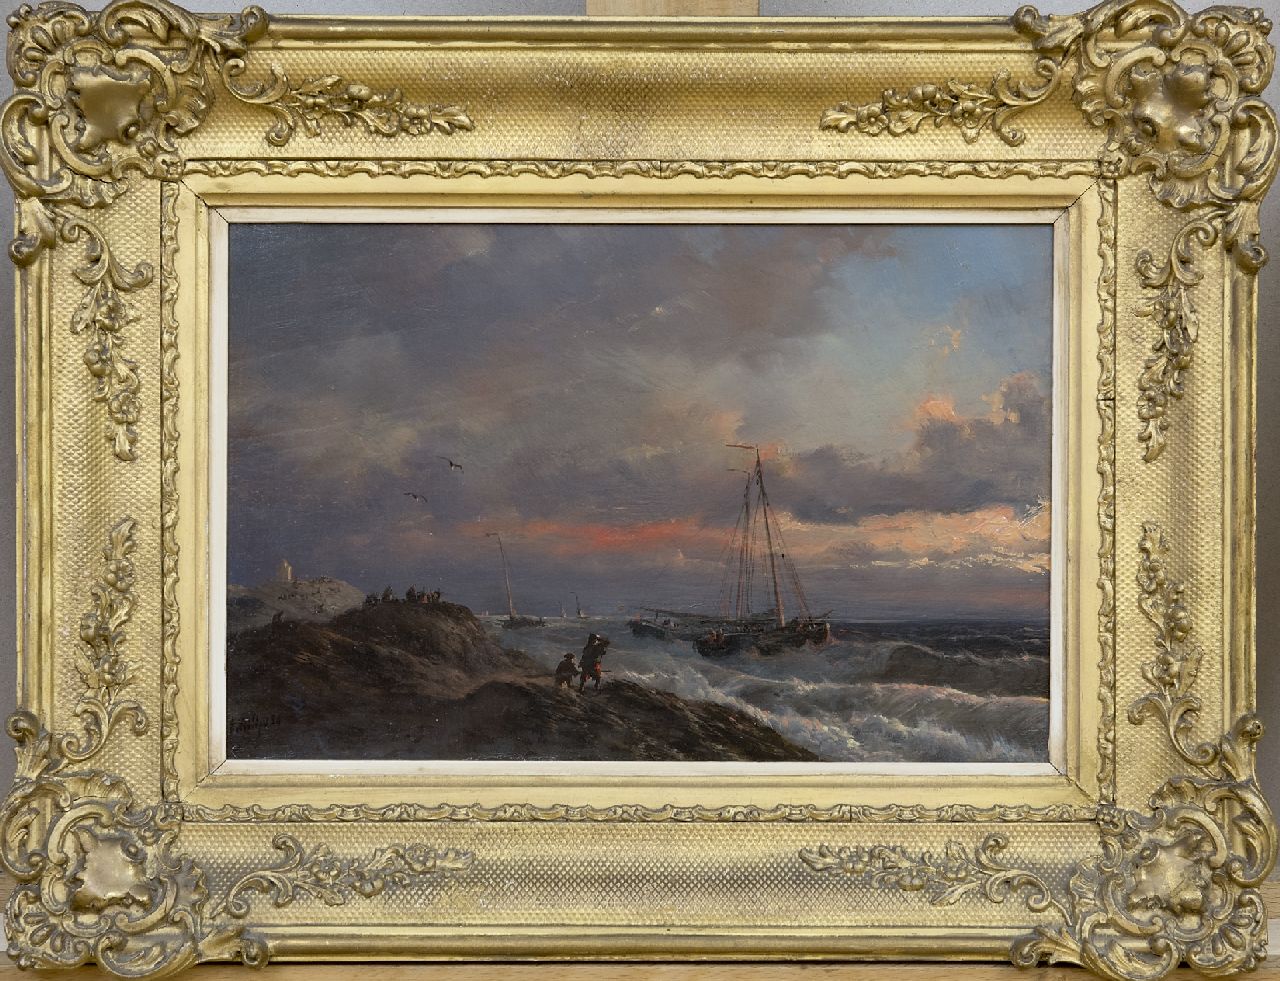 Schiedges P.P.  | Petrus Paulus Schiedges, Storm on the Dutch coast, oil on panel 19.2 x 29.2 cm, signed l.l. and dated '54